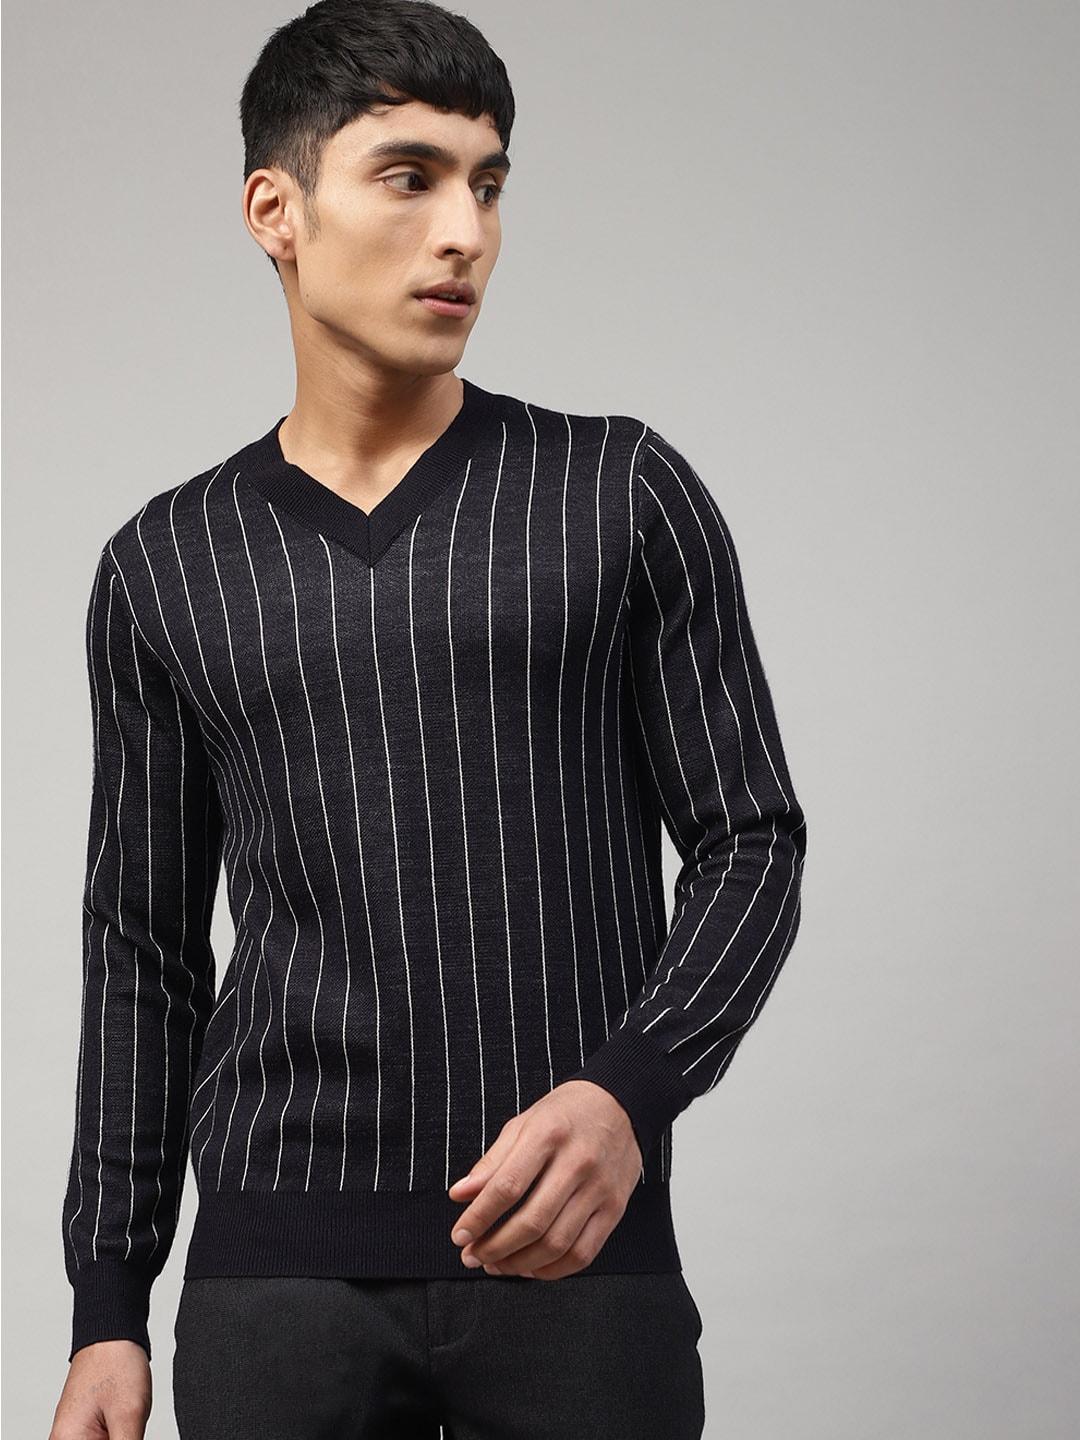 antony morato black & white striped pullover sweater